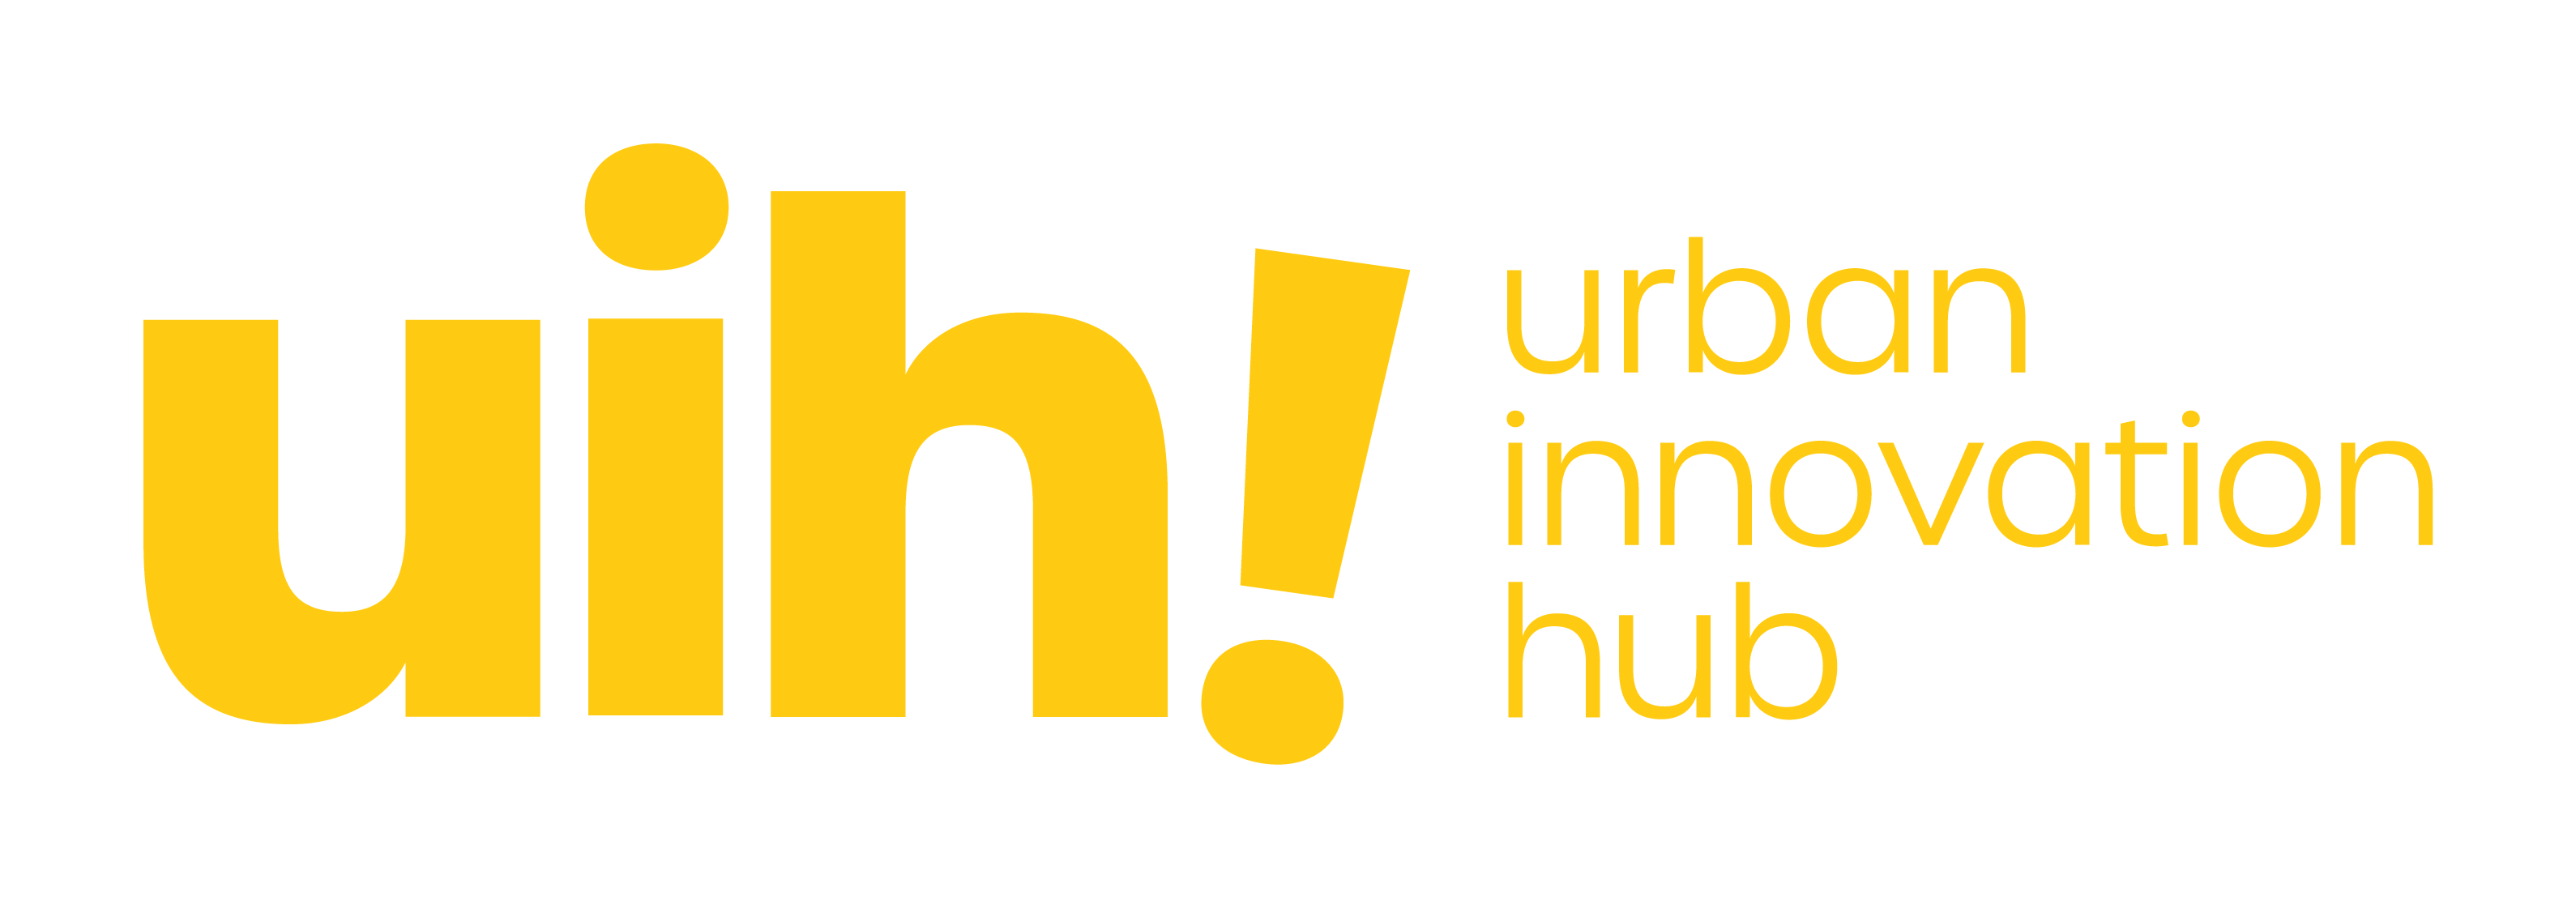 Urban Innovation Hub Logo 